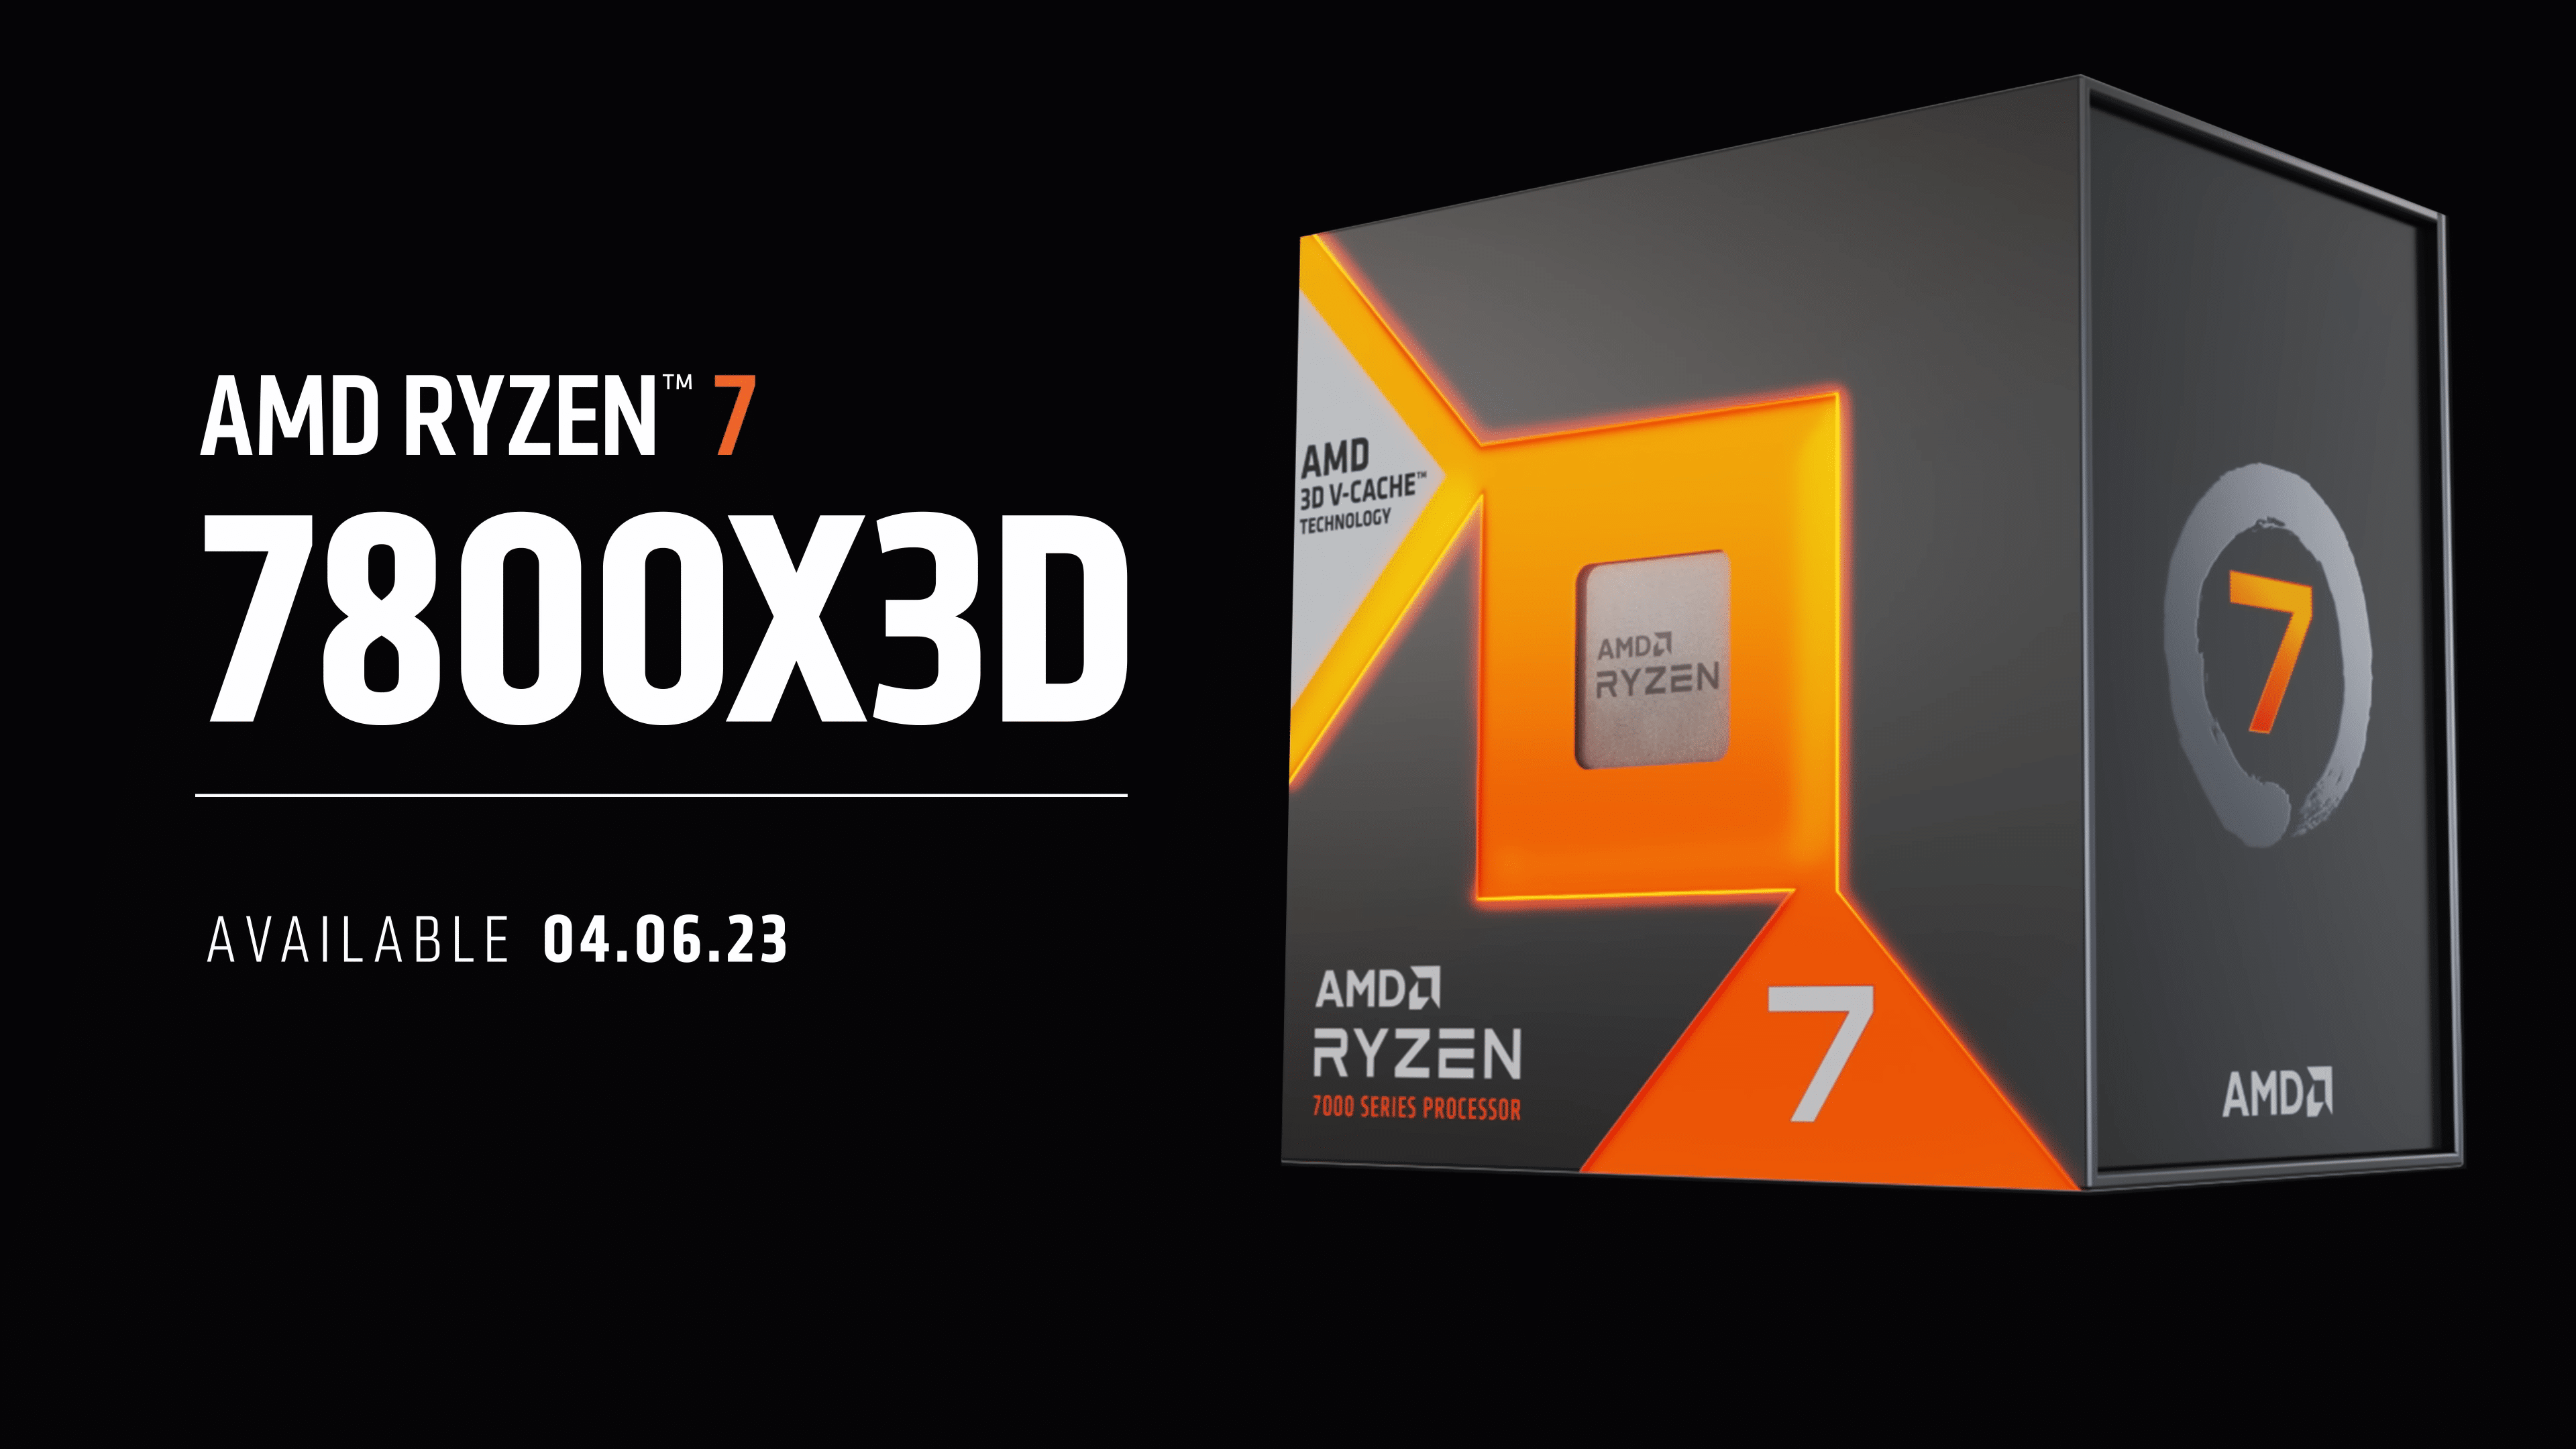 AMD Ryzen 7000X3D Series Launch Beginning Feb 28, 7950X3D $699 33